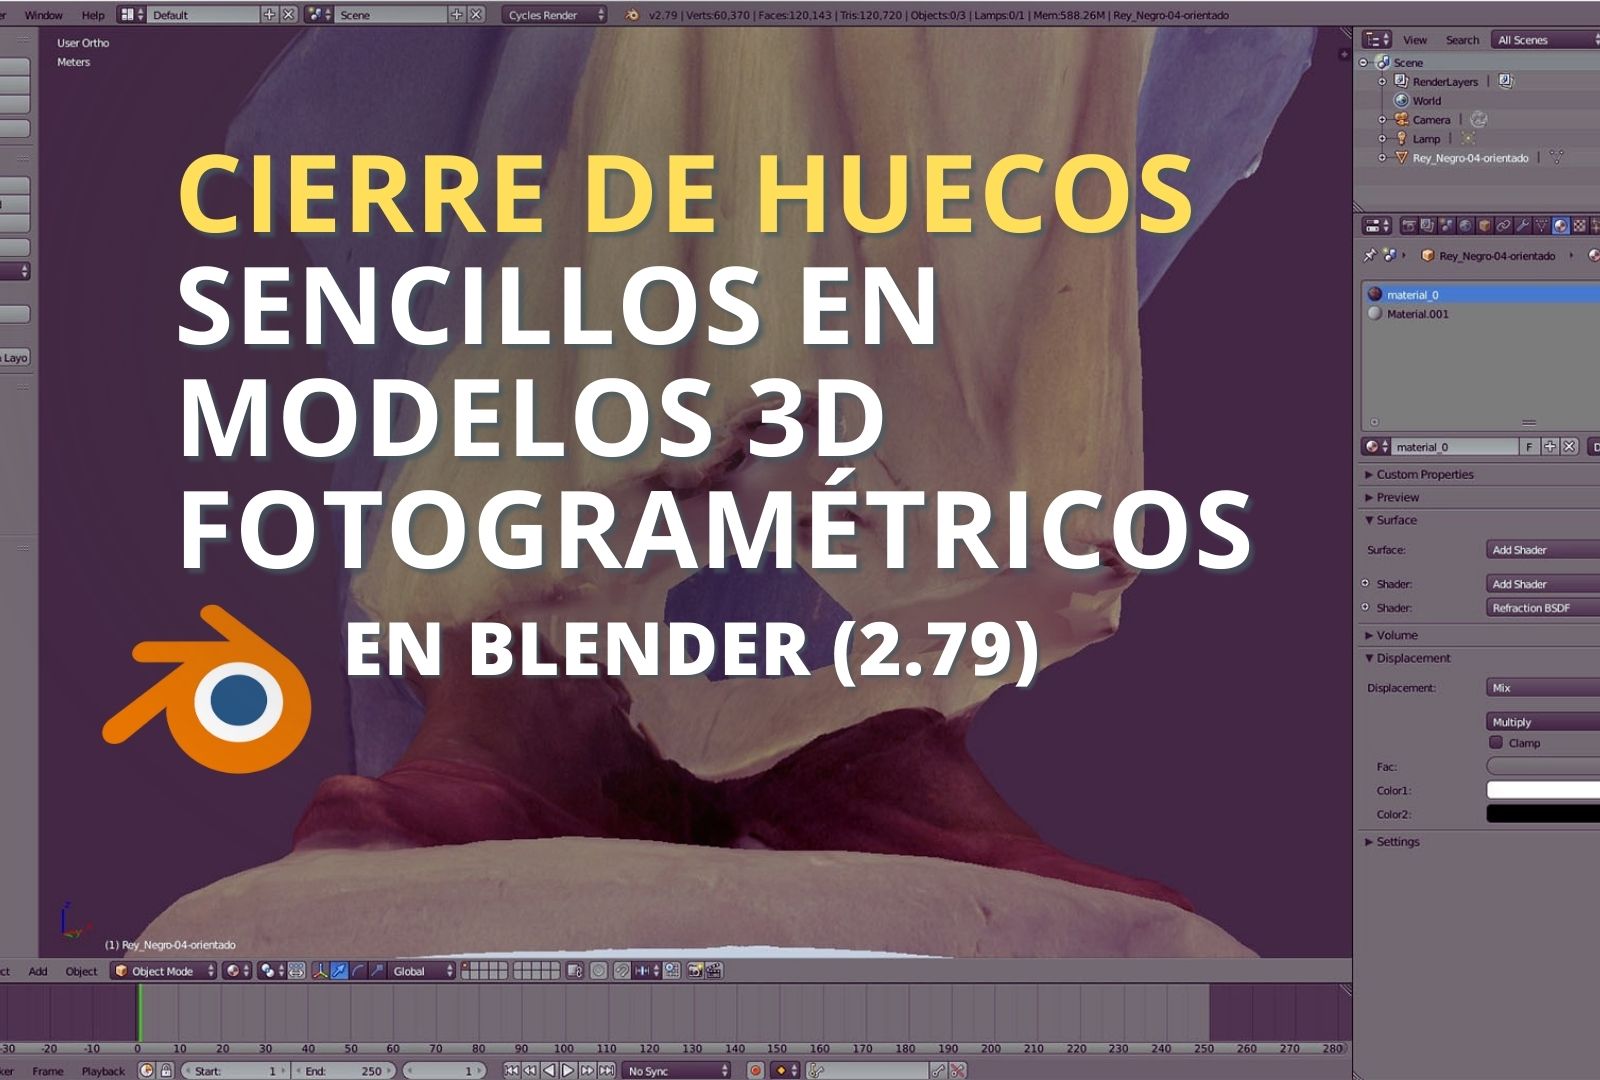 Cierre de huecos sencillos en modelos 3D fotogramétricos con Blender